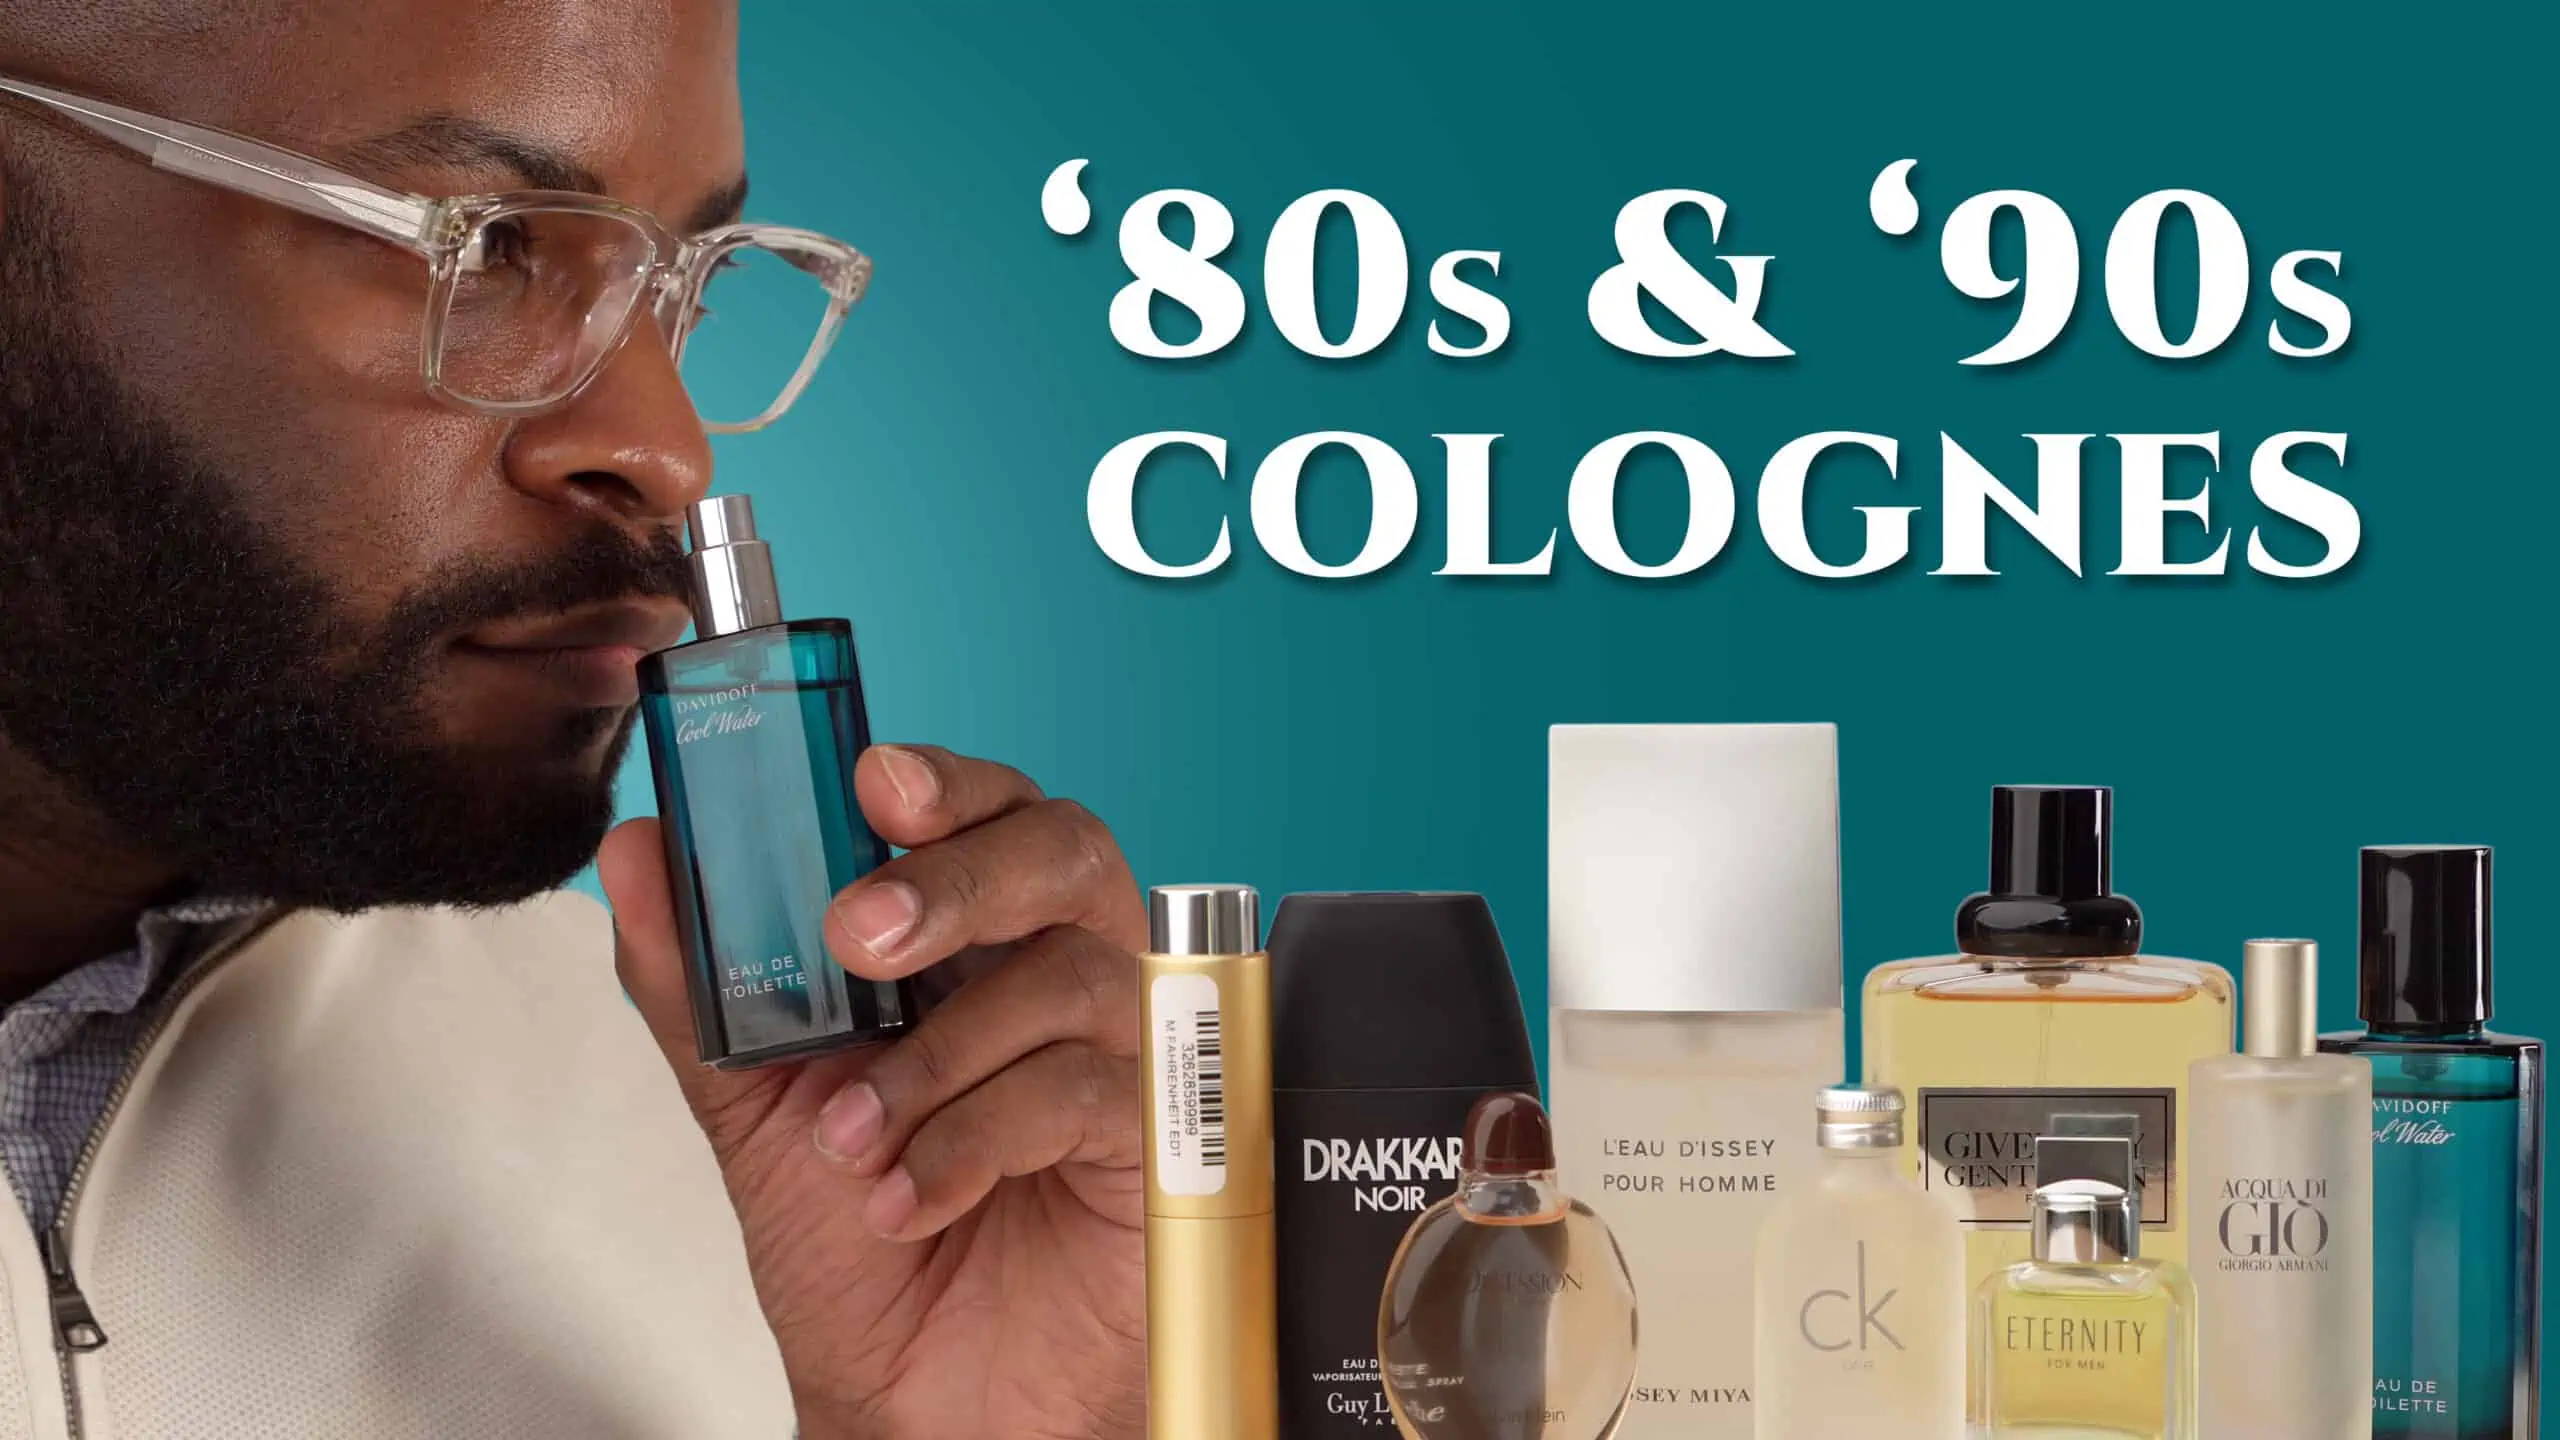 chanel cologne for men parfum 22 women cologne